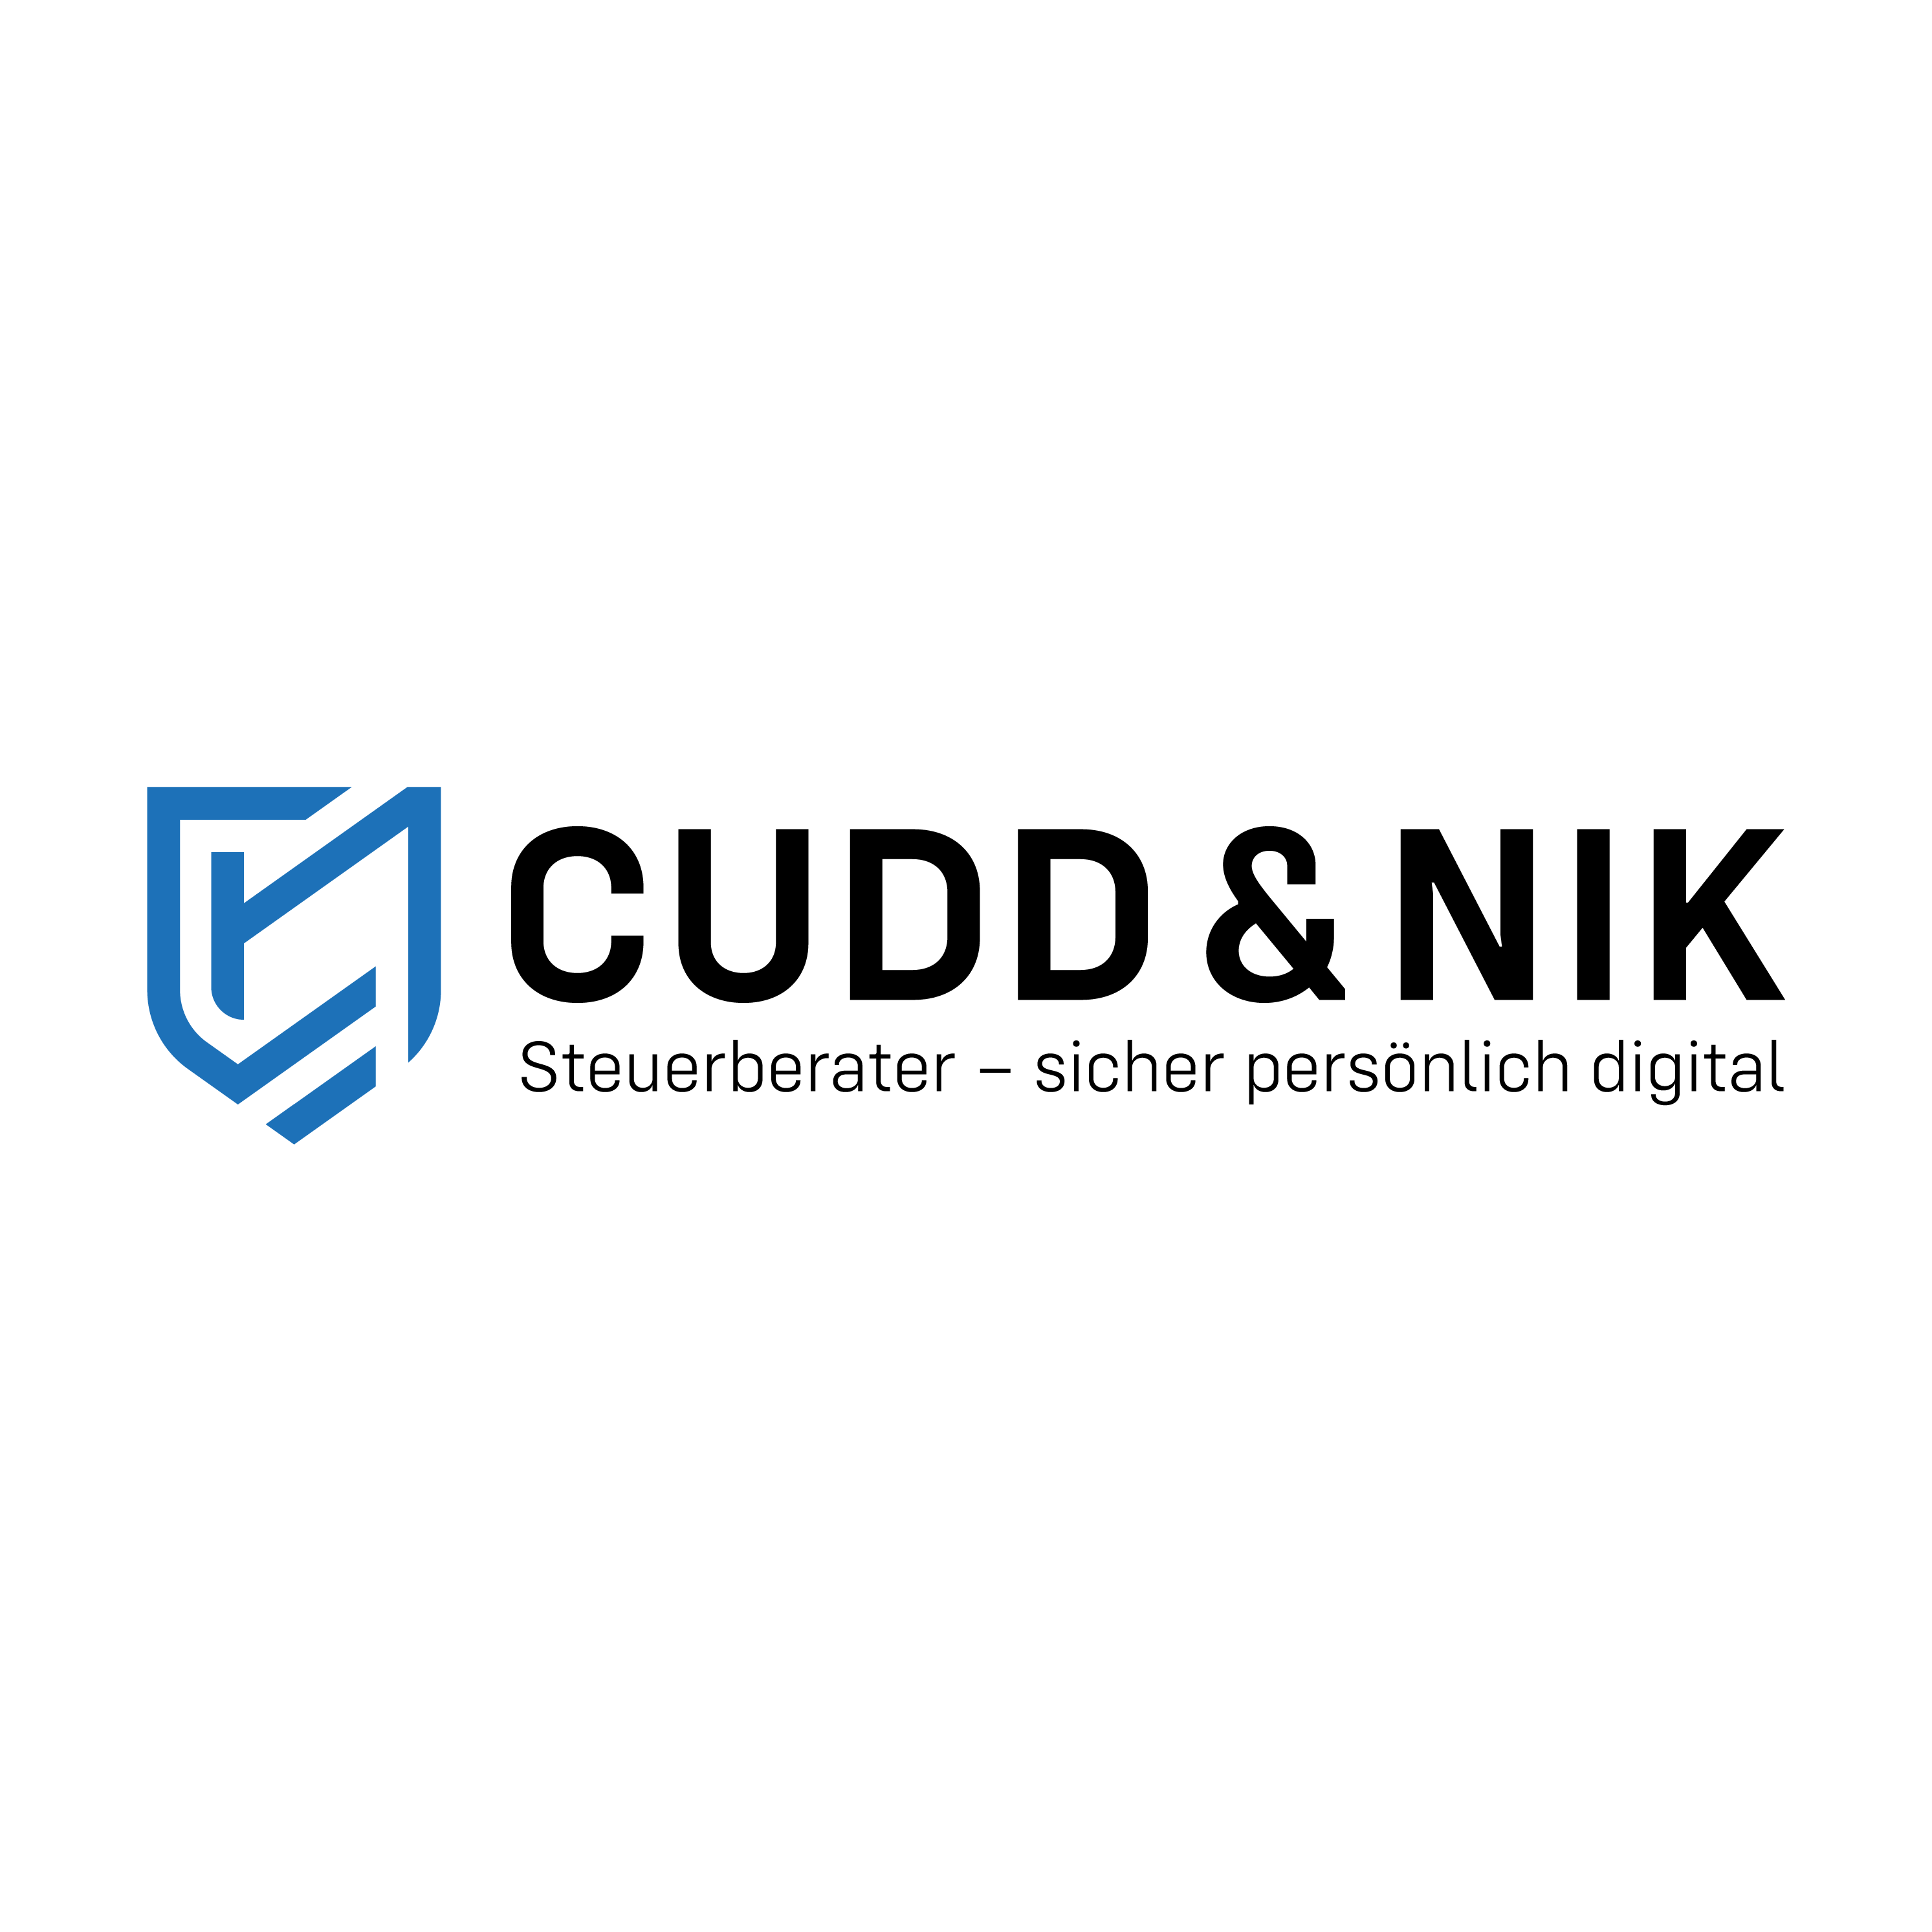 Steuerberater Cudd & Nik in Offenbach am Main - Logo